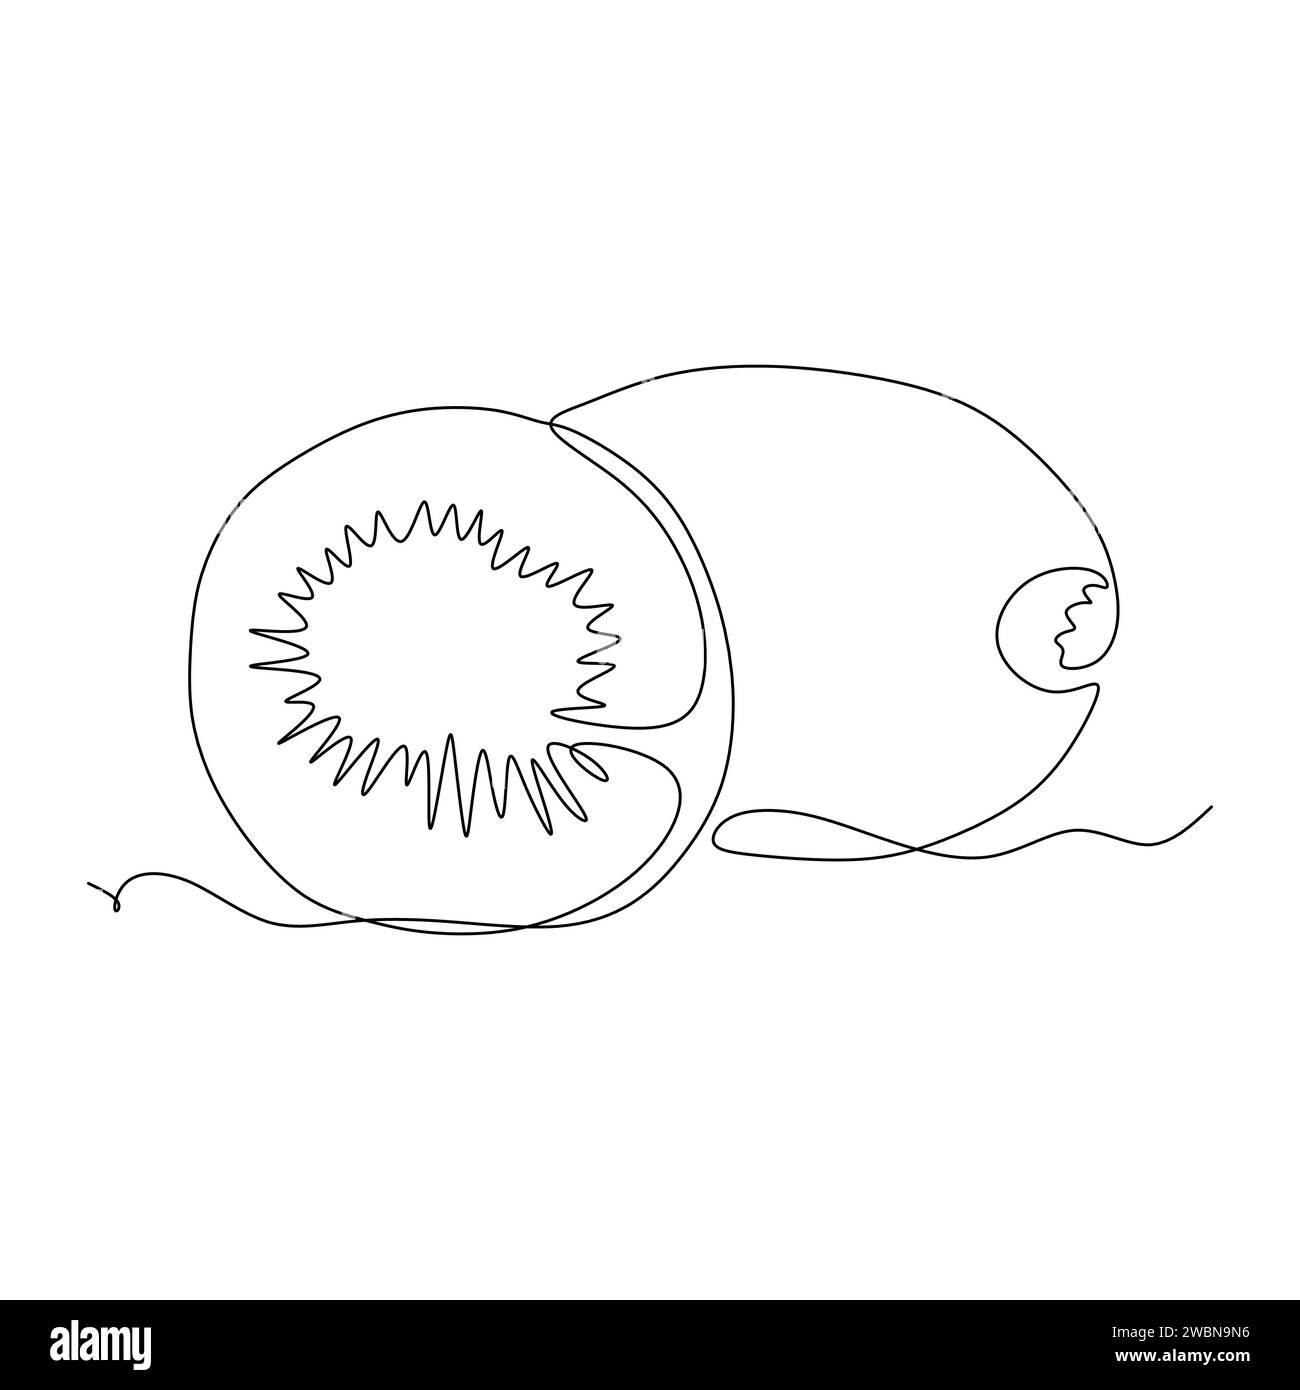 Disegno continuo a una linea di kiwi. Illustrazione vettoriale per l'elemento di progettazione del concetto alimentare Illustrazione Vettoriale